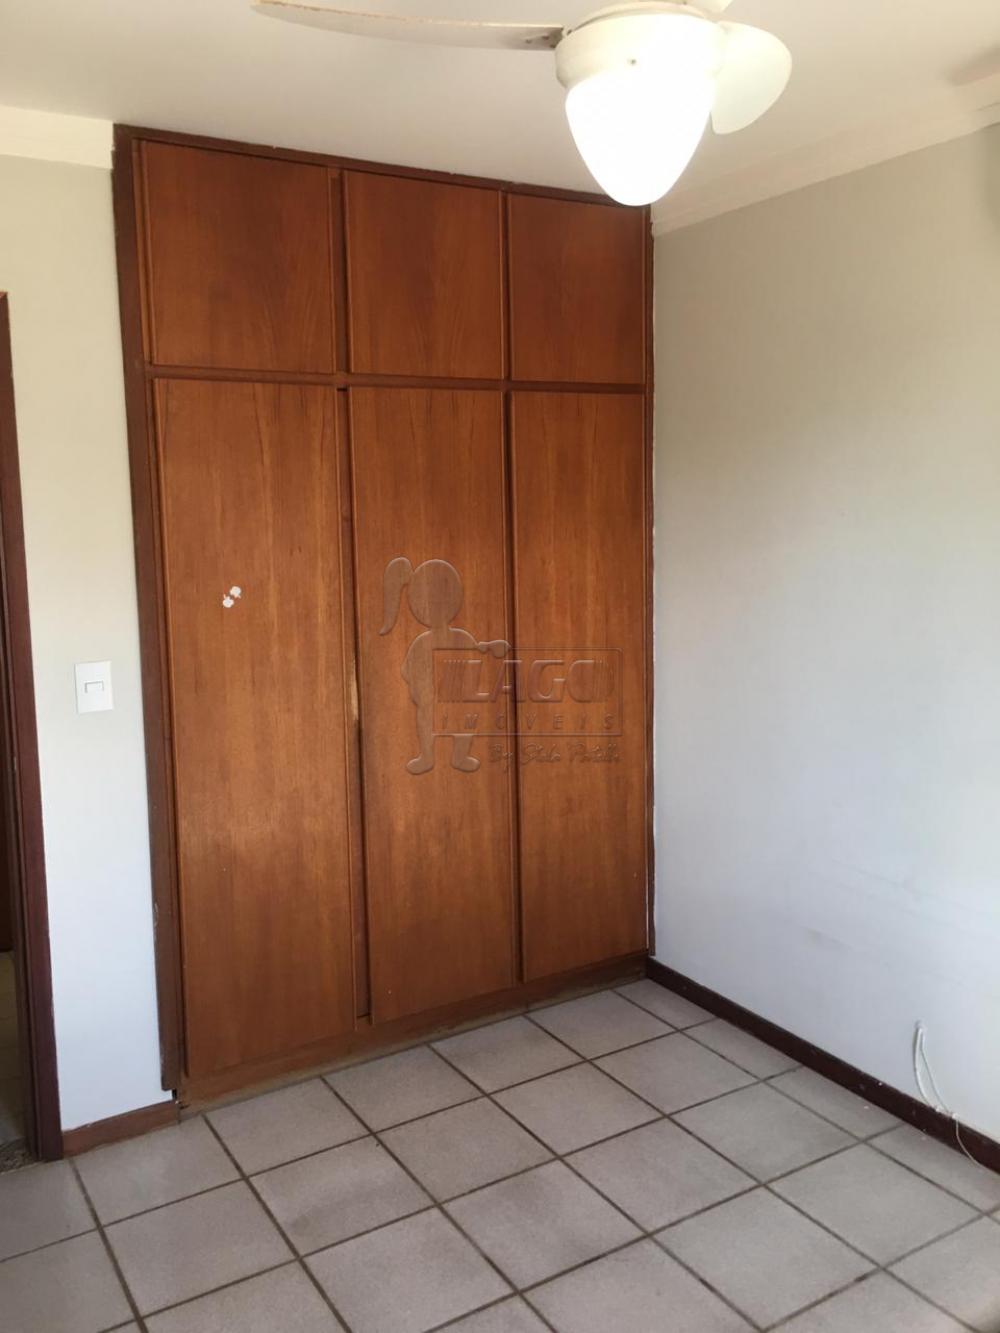 Alugar Apartamentos / Padrão em Ribeirão Preto R$ 1.800,00 - Foto 8